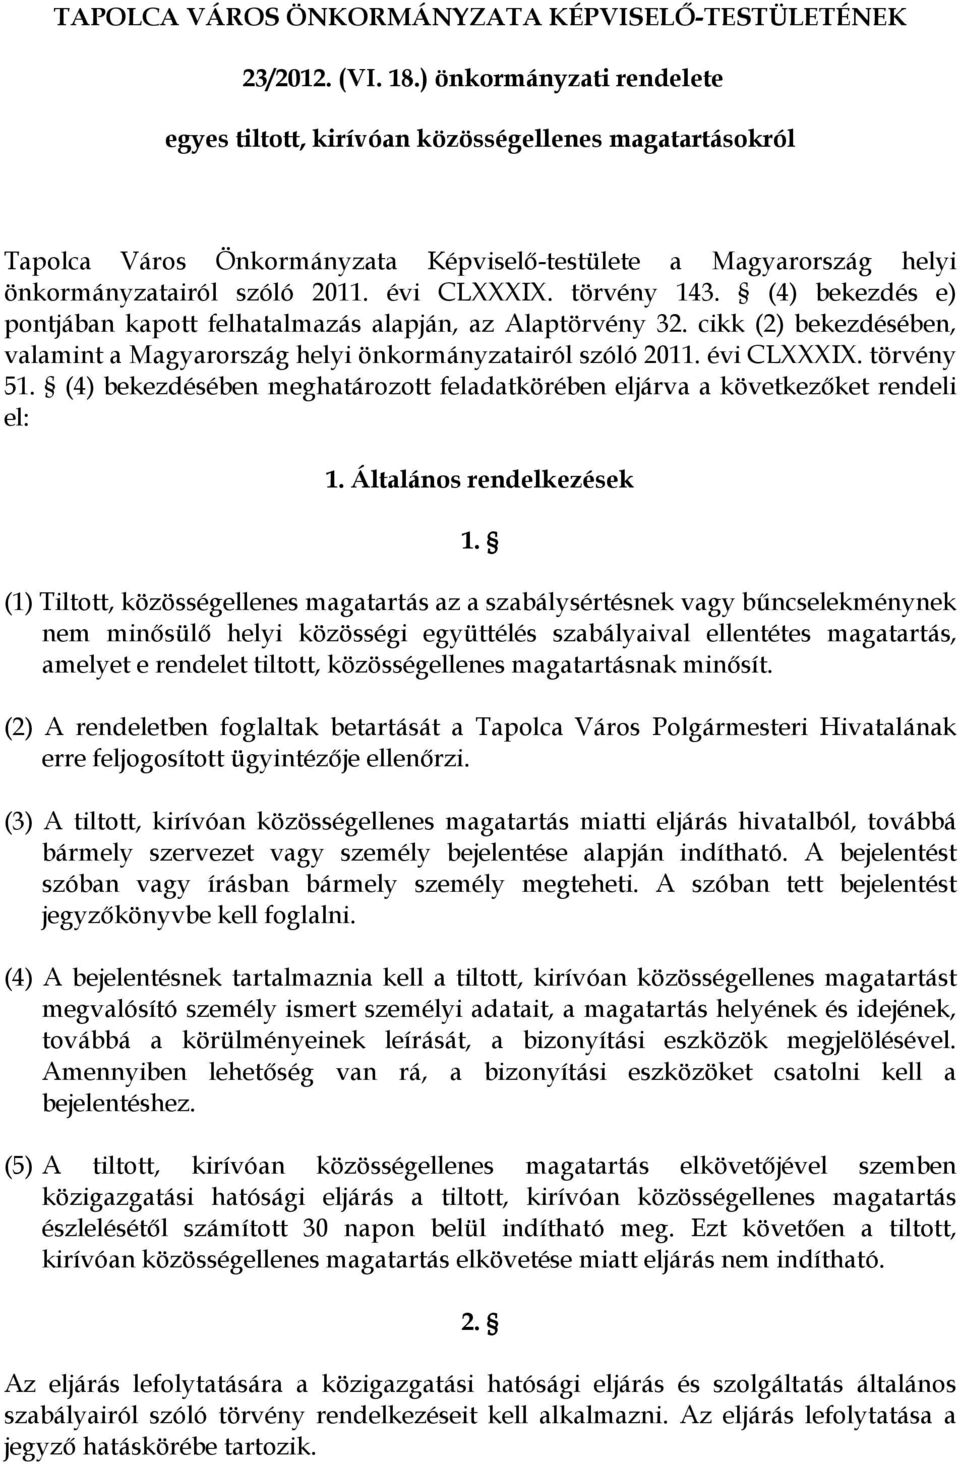 törvény 143. (4) bekezdés e) pontjában kapott felhatalmazás alapján, az Alaptörvény 32. cikk (2) bekezdésében, valamint a Magyarország helyi önkormányzatairól szóló 2011. évi CLXXXIX. törvény 51.